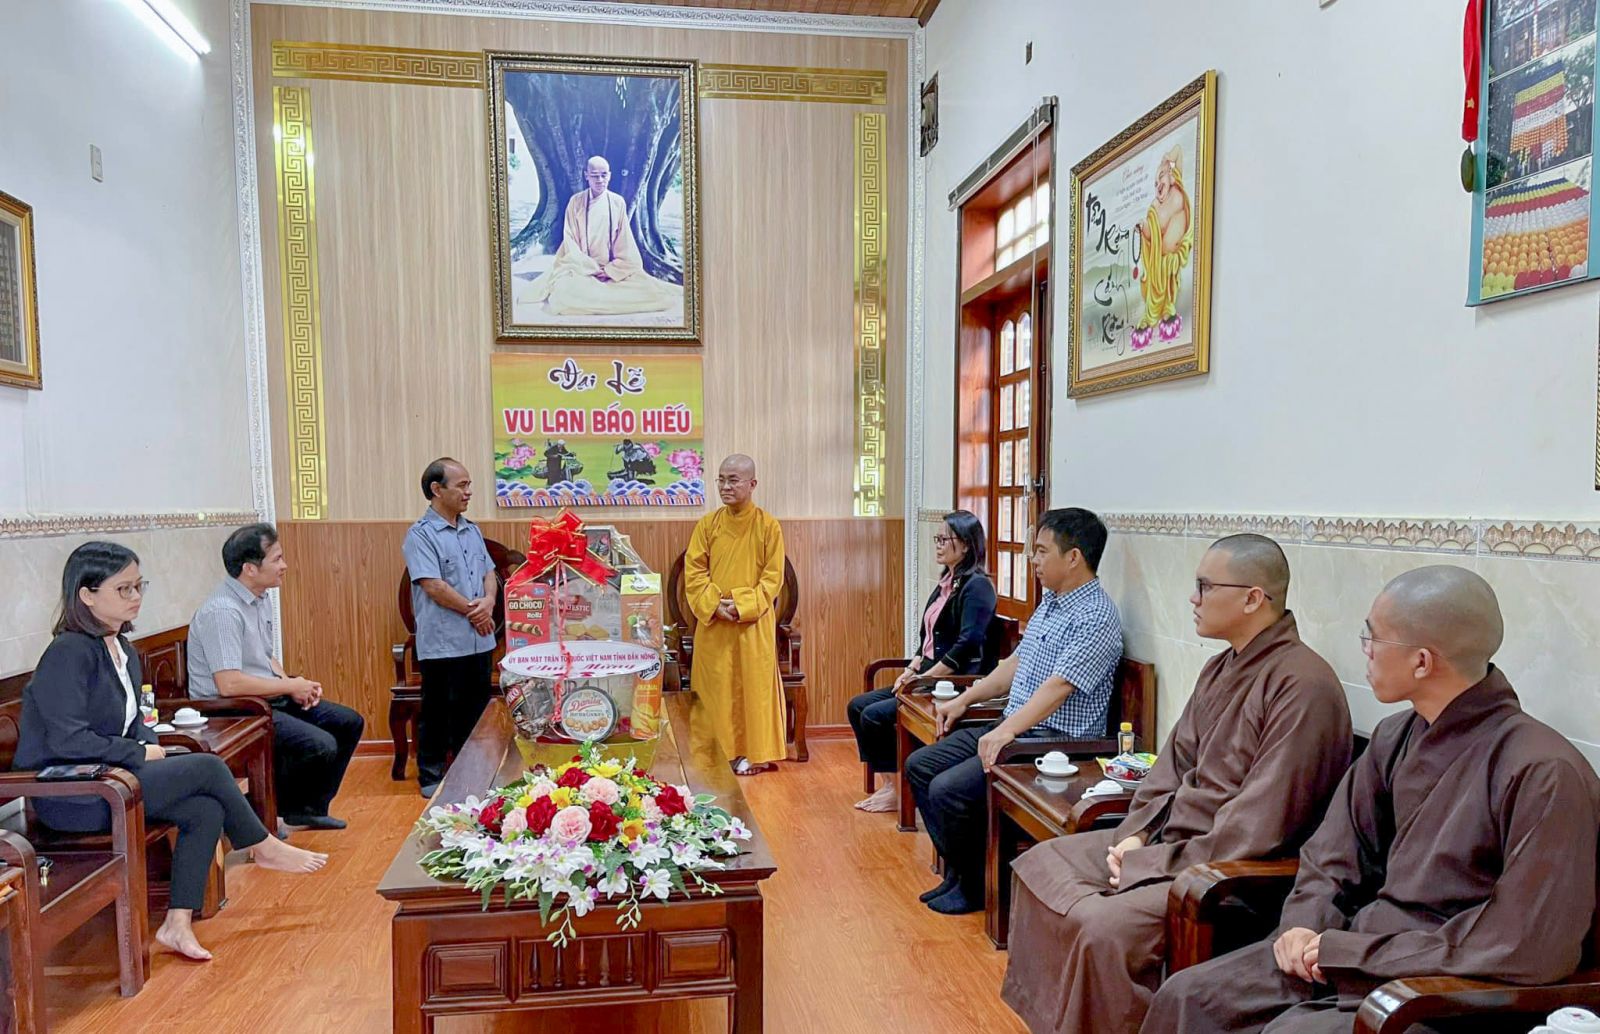 Ủy ban MTTQVN tỉnh Đắk Nông và thành phố Gia Nghĩa chúc mừng lễ Vu lan Báo hiếu đến chùa Pháp Hoa